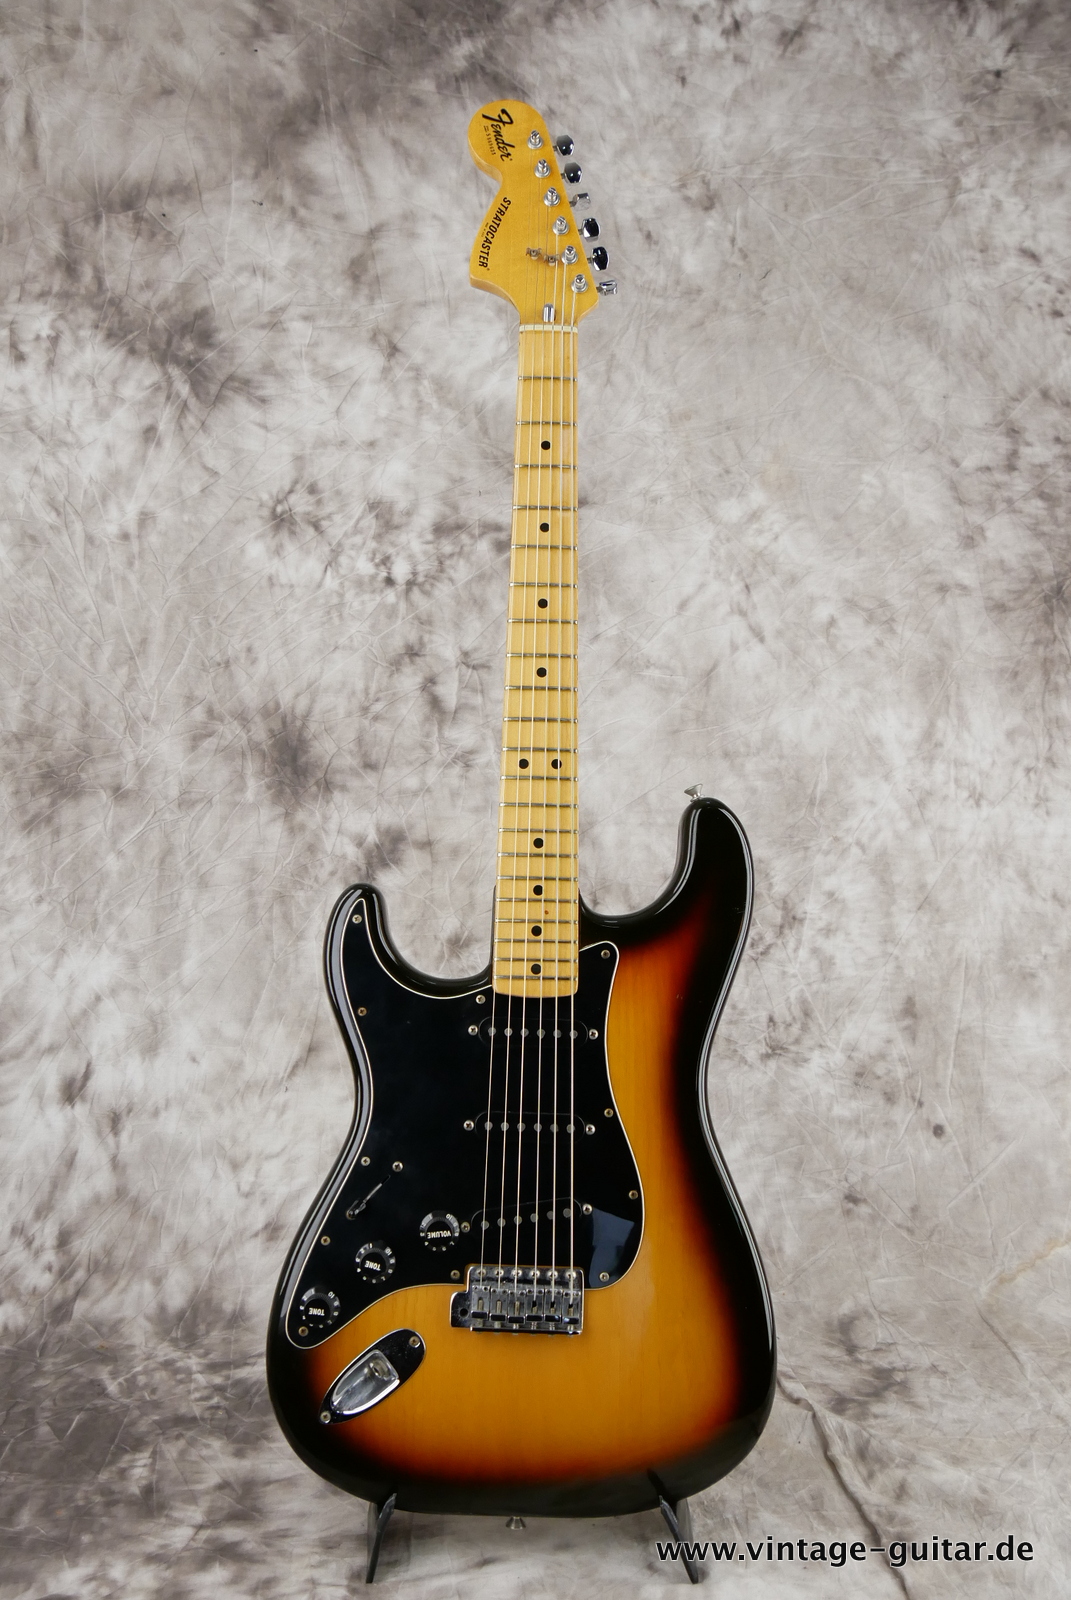 img/vintage/5464/Fender_Left_Hand_Stratocaster_1980_sunburst_usa_maple_neck-001.JPG